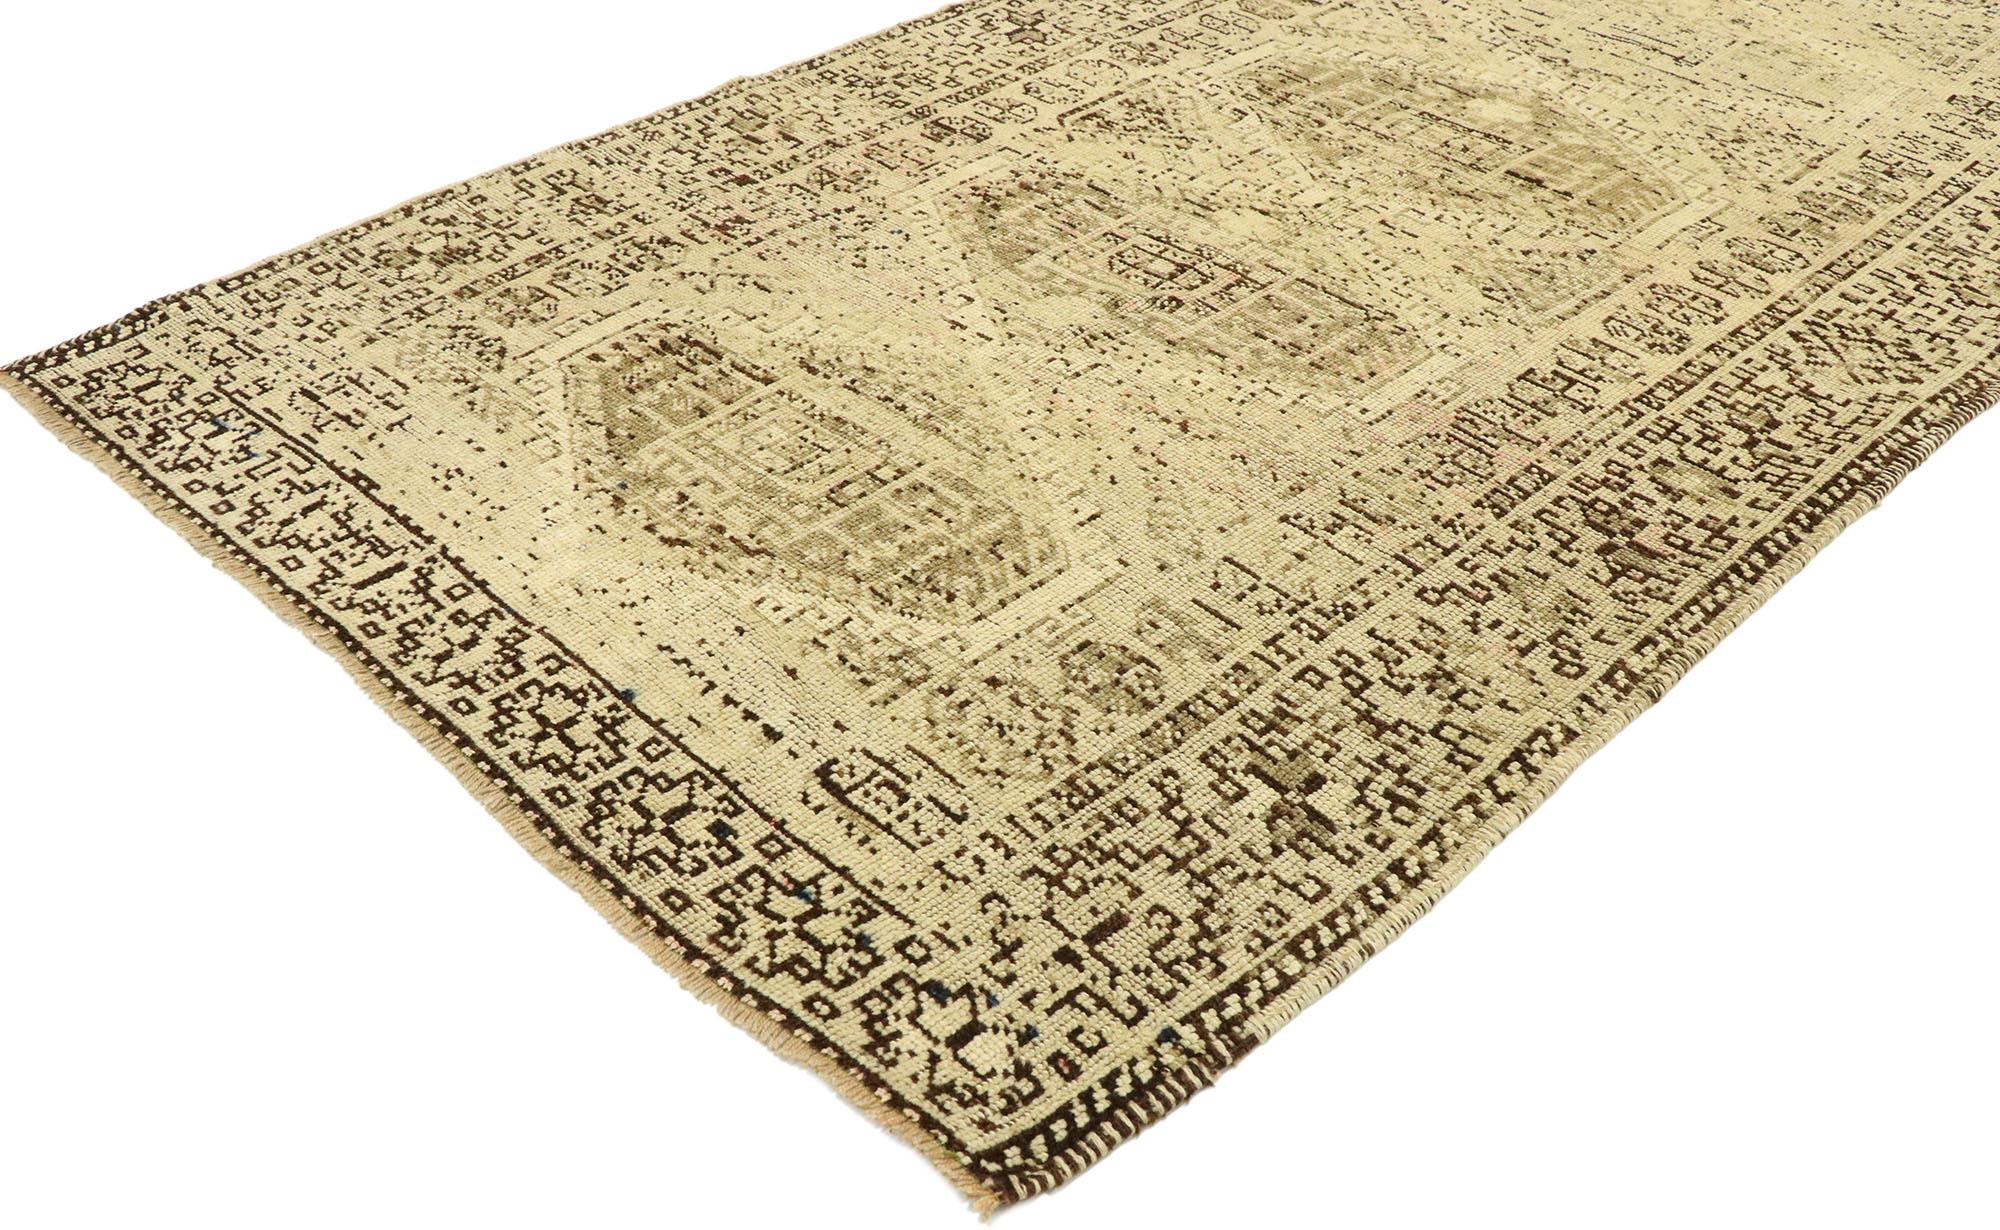 53048, tapis persan vintage Shiraz avec un style shaker moderne. Chaleureux et accueillant, avec une esthétique expressive dans une gamme de couleurs neutres, ce tapis persan vintage Shiraz en laine nouée à la main incarne magnifiquement un style